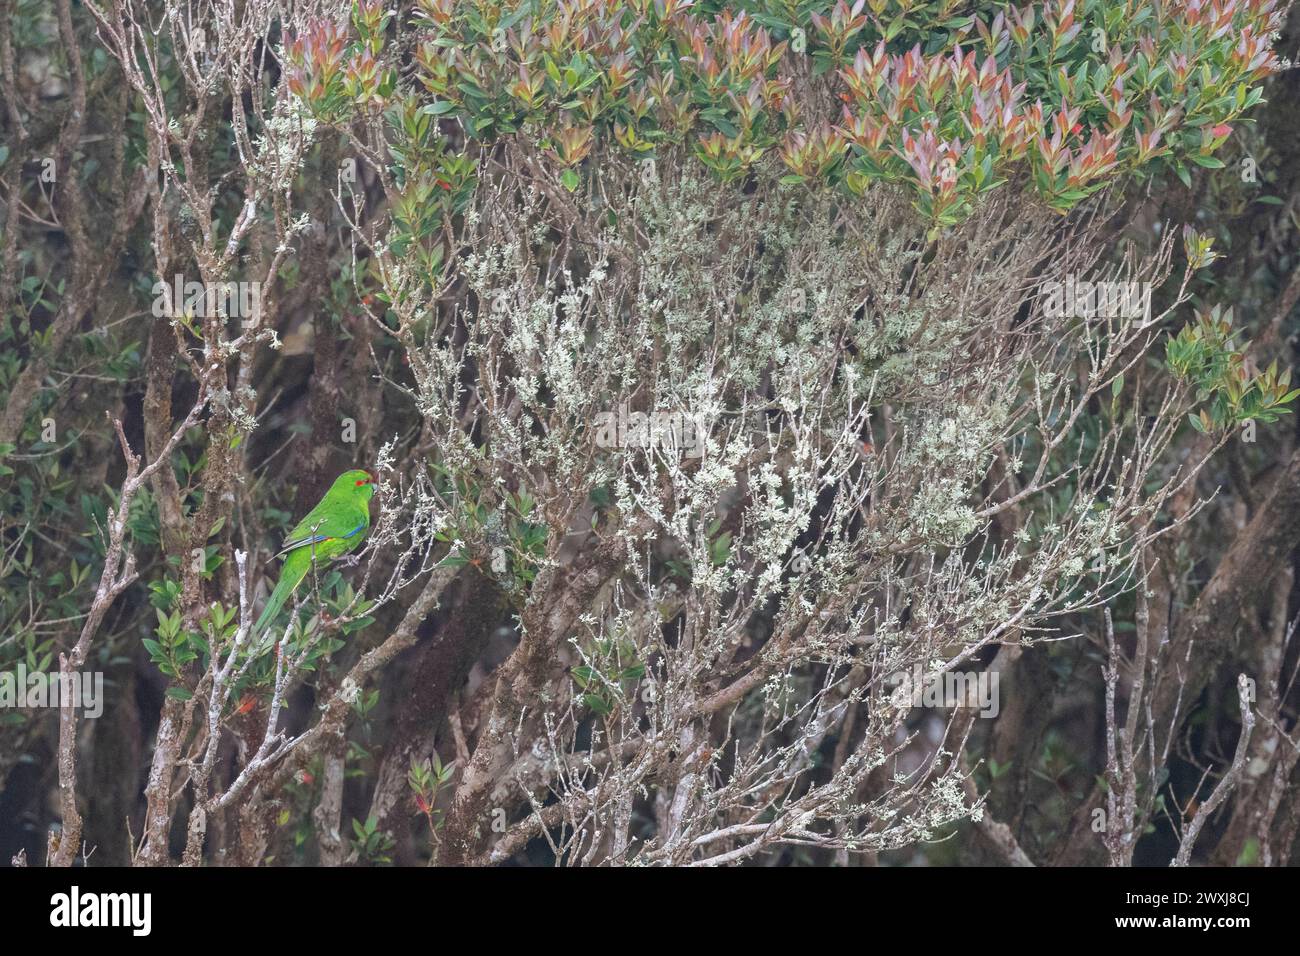 Nouvelle-Zélande, îles subantarctiques, îles d'Auckland, île d'Enderby. Perruche à couronne rouge, Cyanoramphus novaezelandiae novaezelandiae, dans la forêt de Rata. Banque D'Images